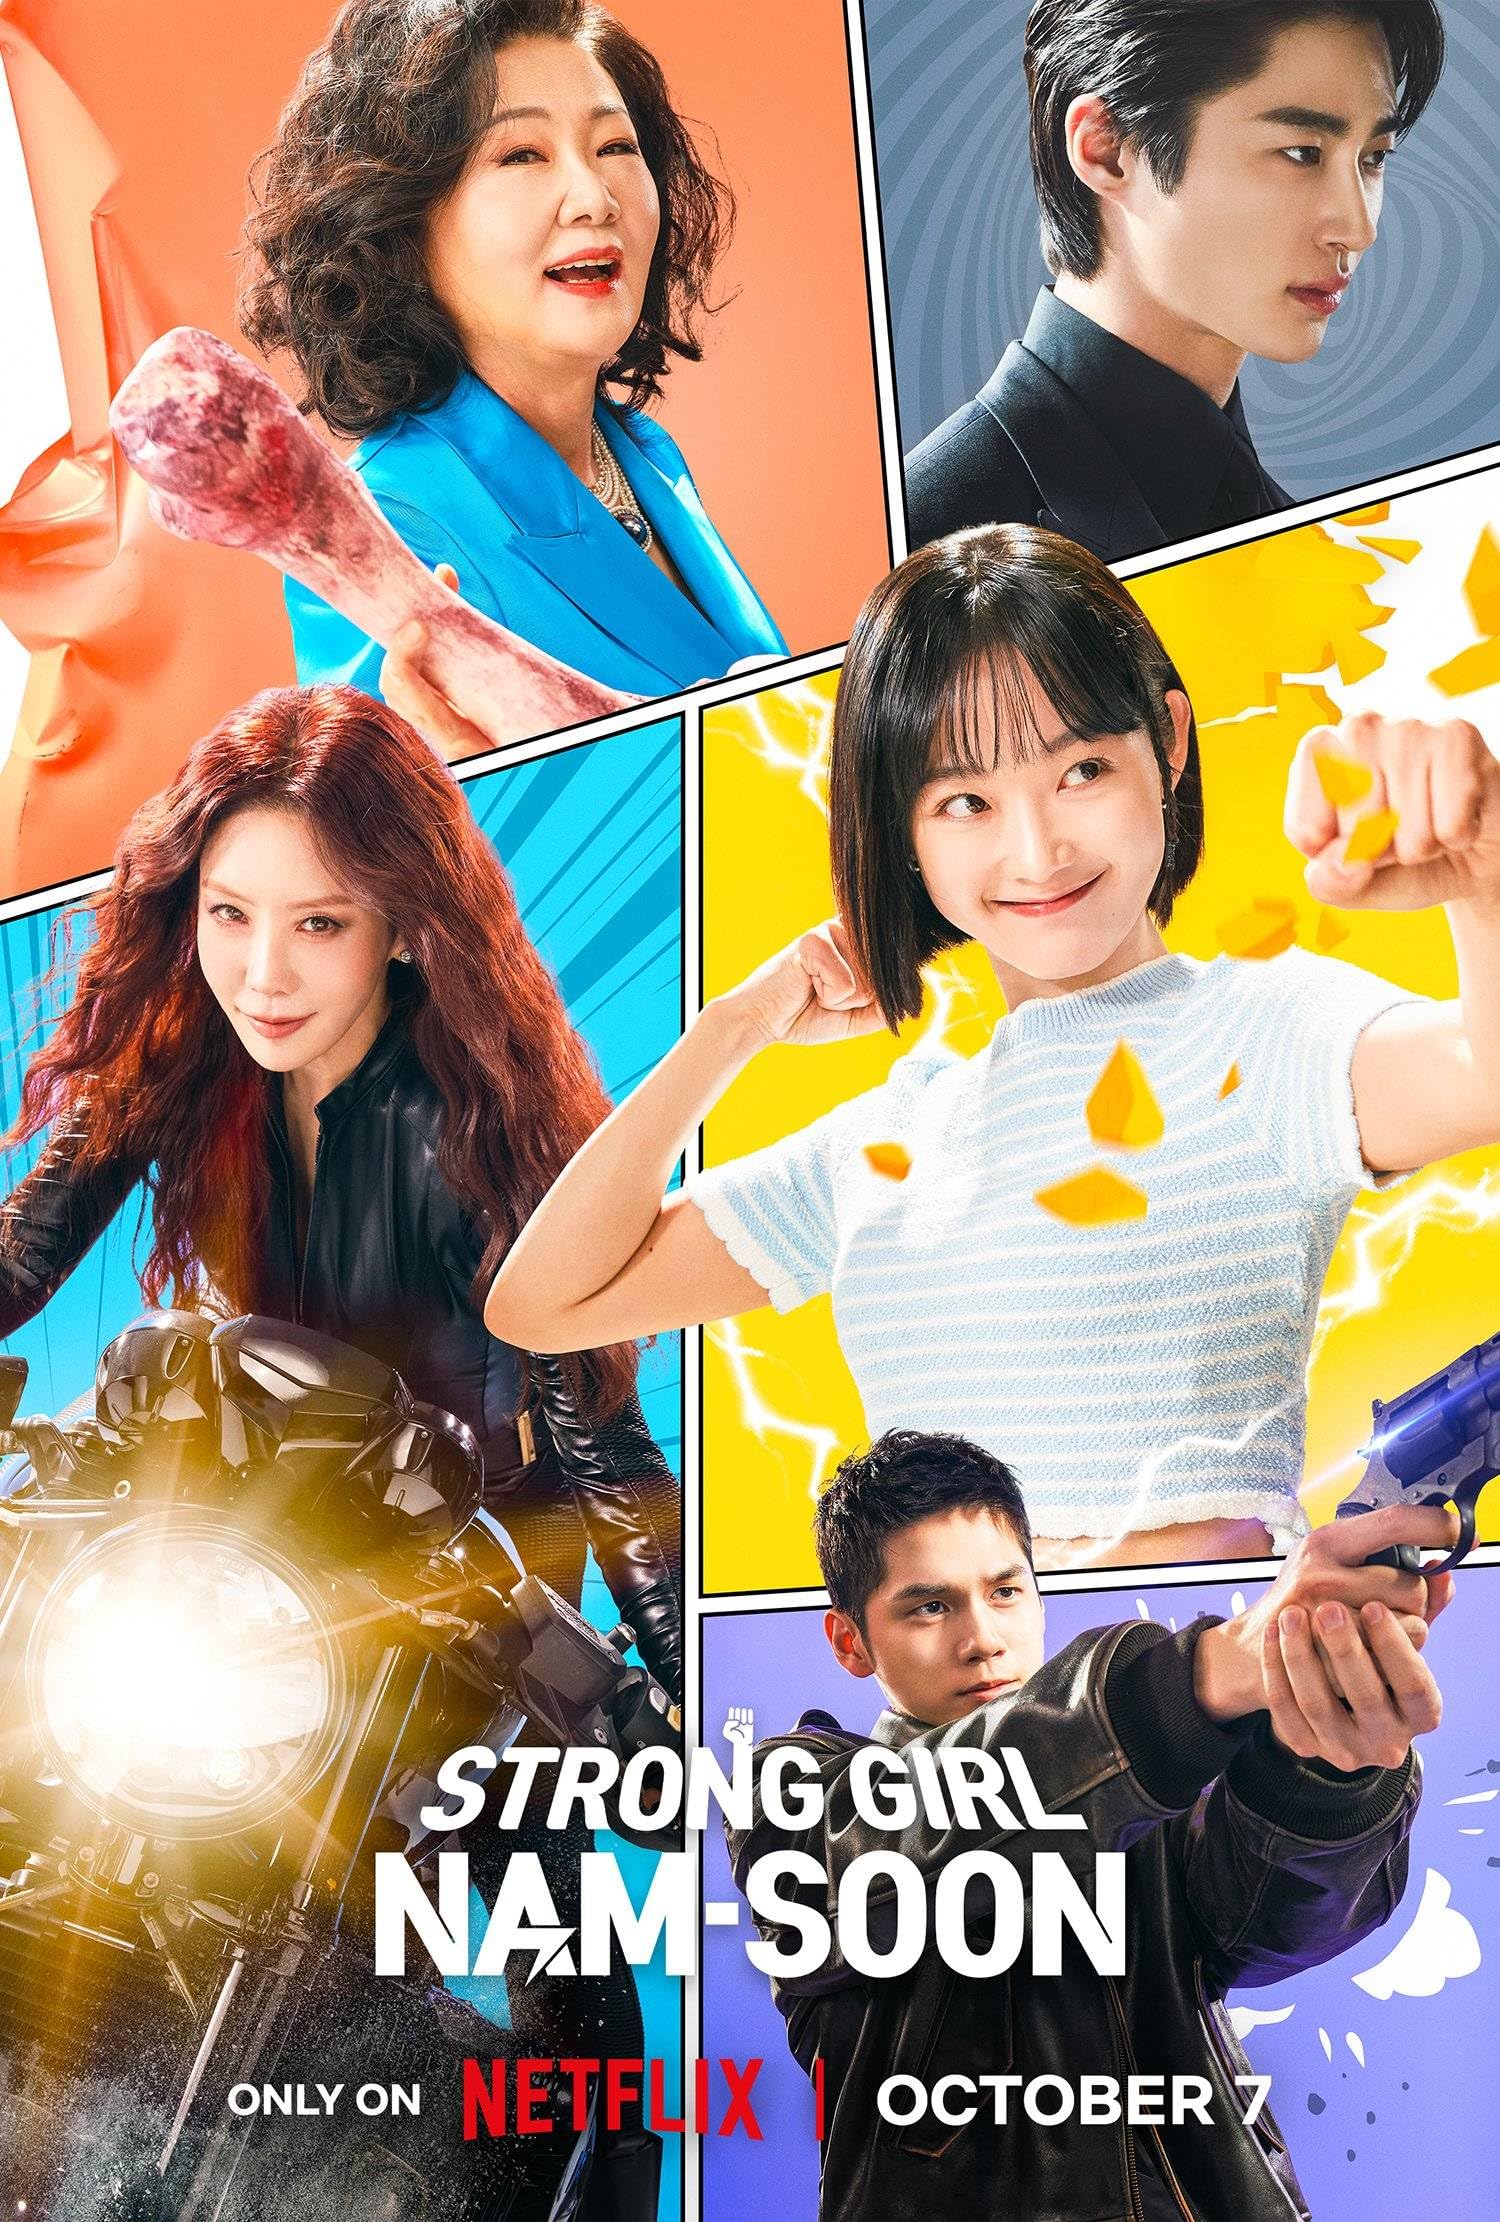 مسلسل الفتاة القوية نام سون Strong Girl Nam-soon الحلقة 11 مترجمة